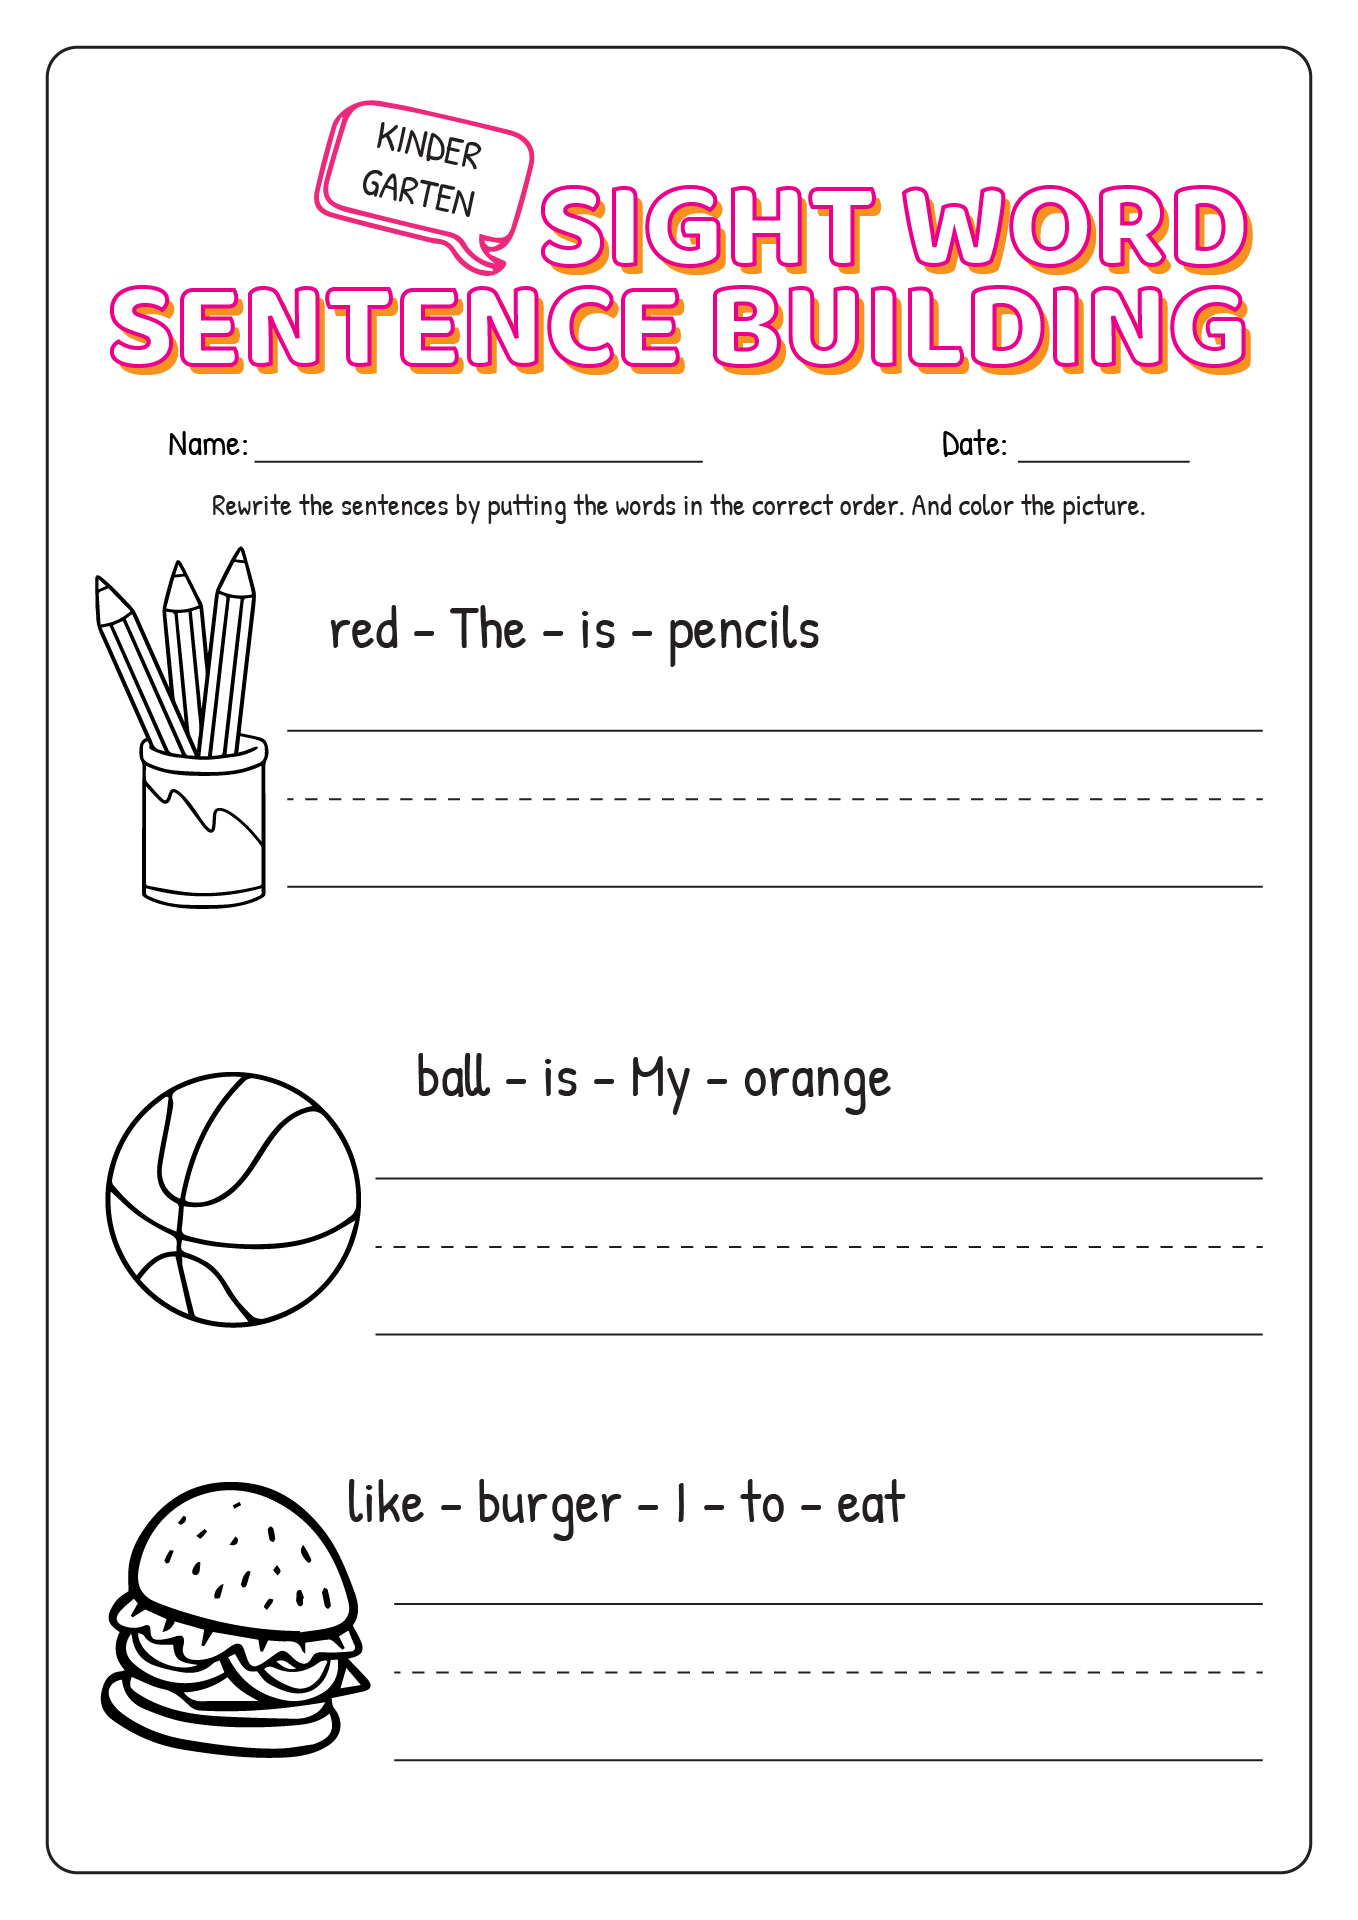 Kindergarten Sight Word Sentence Building